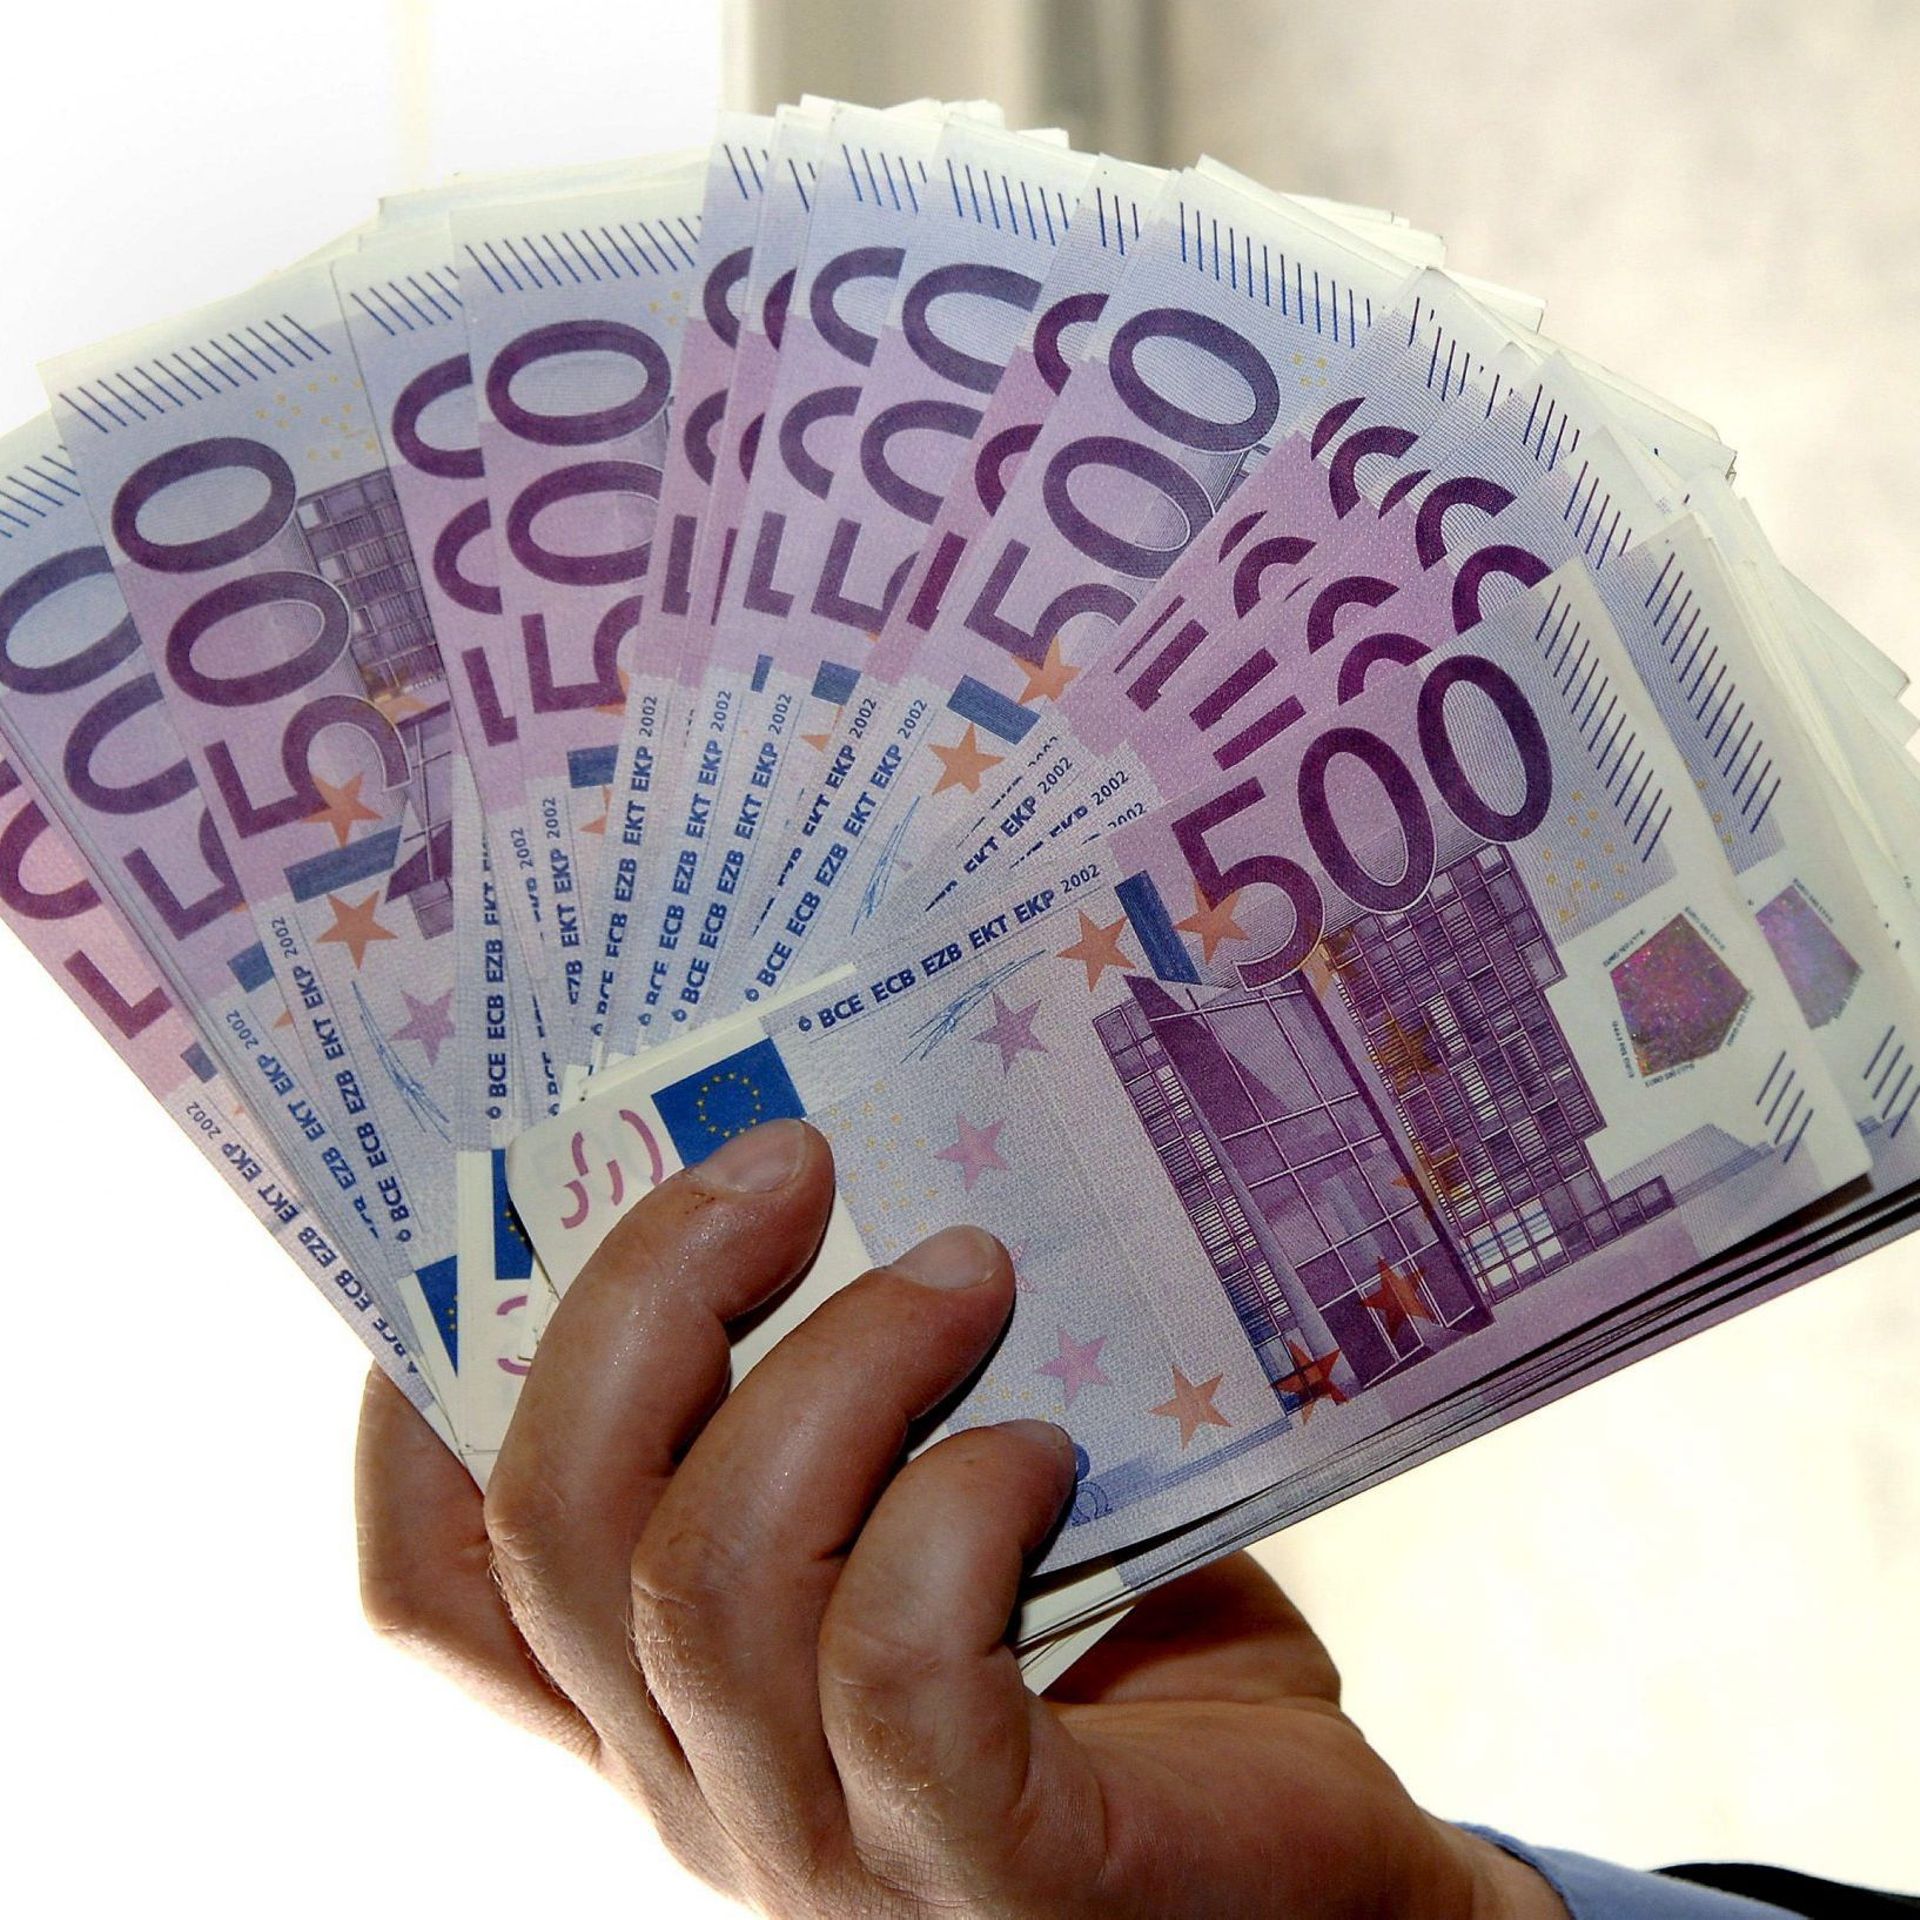 Et si le billet de 500 euros disparaissait ?